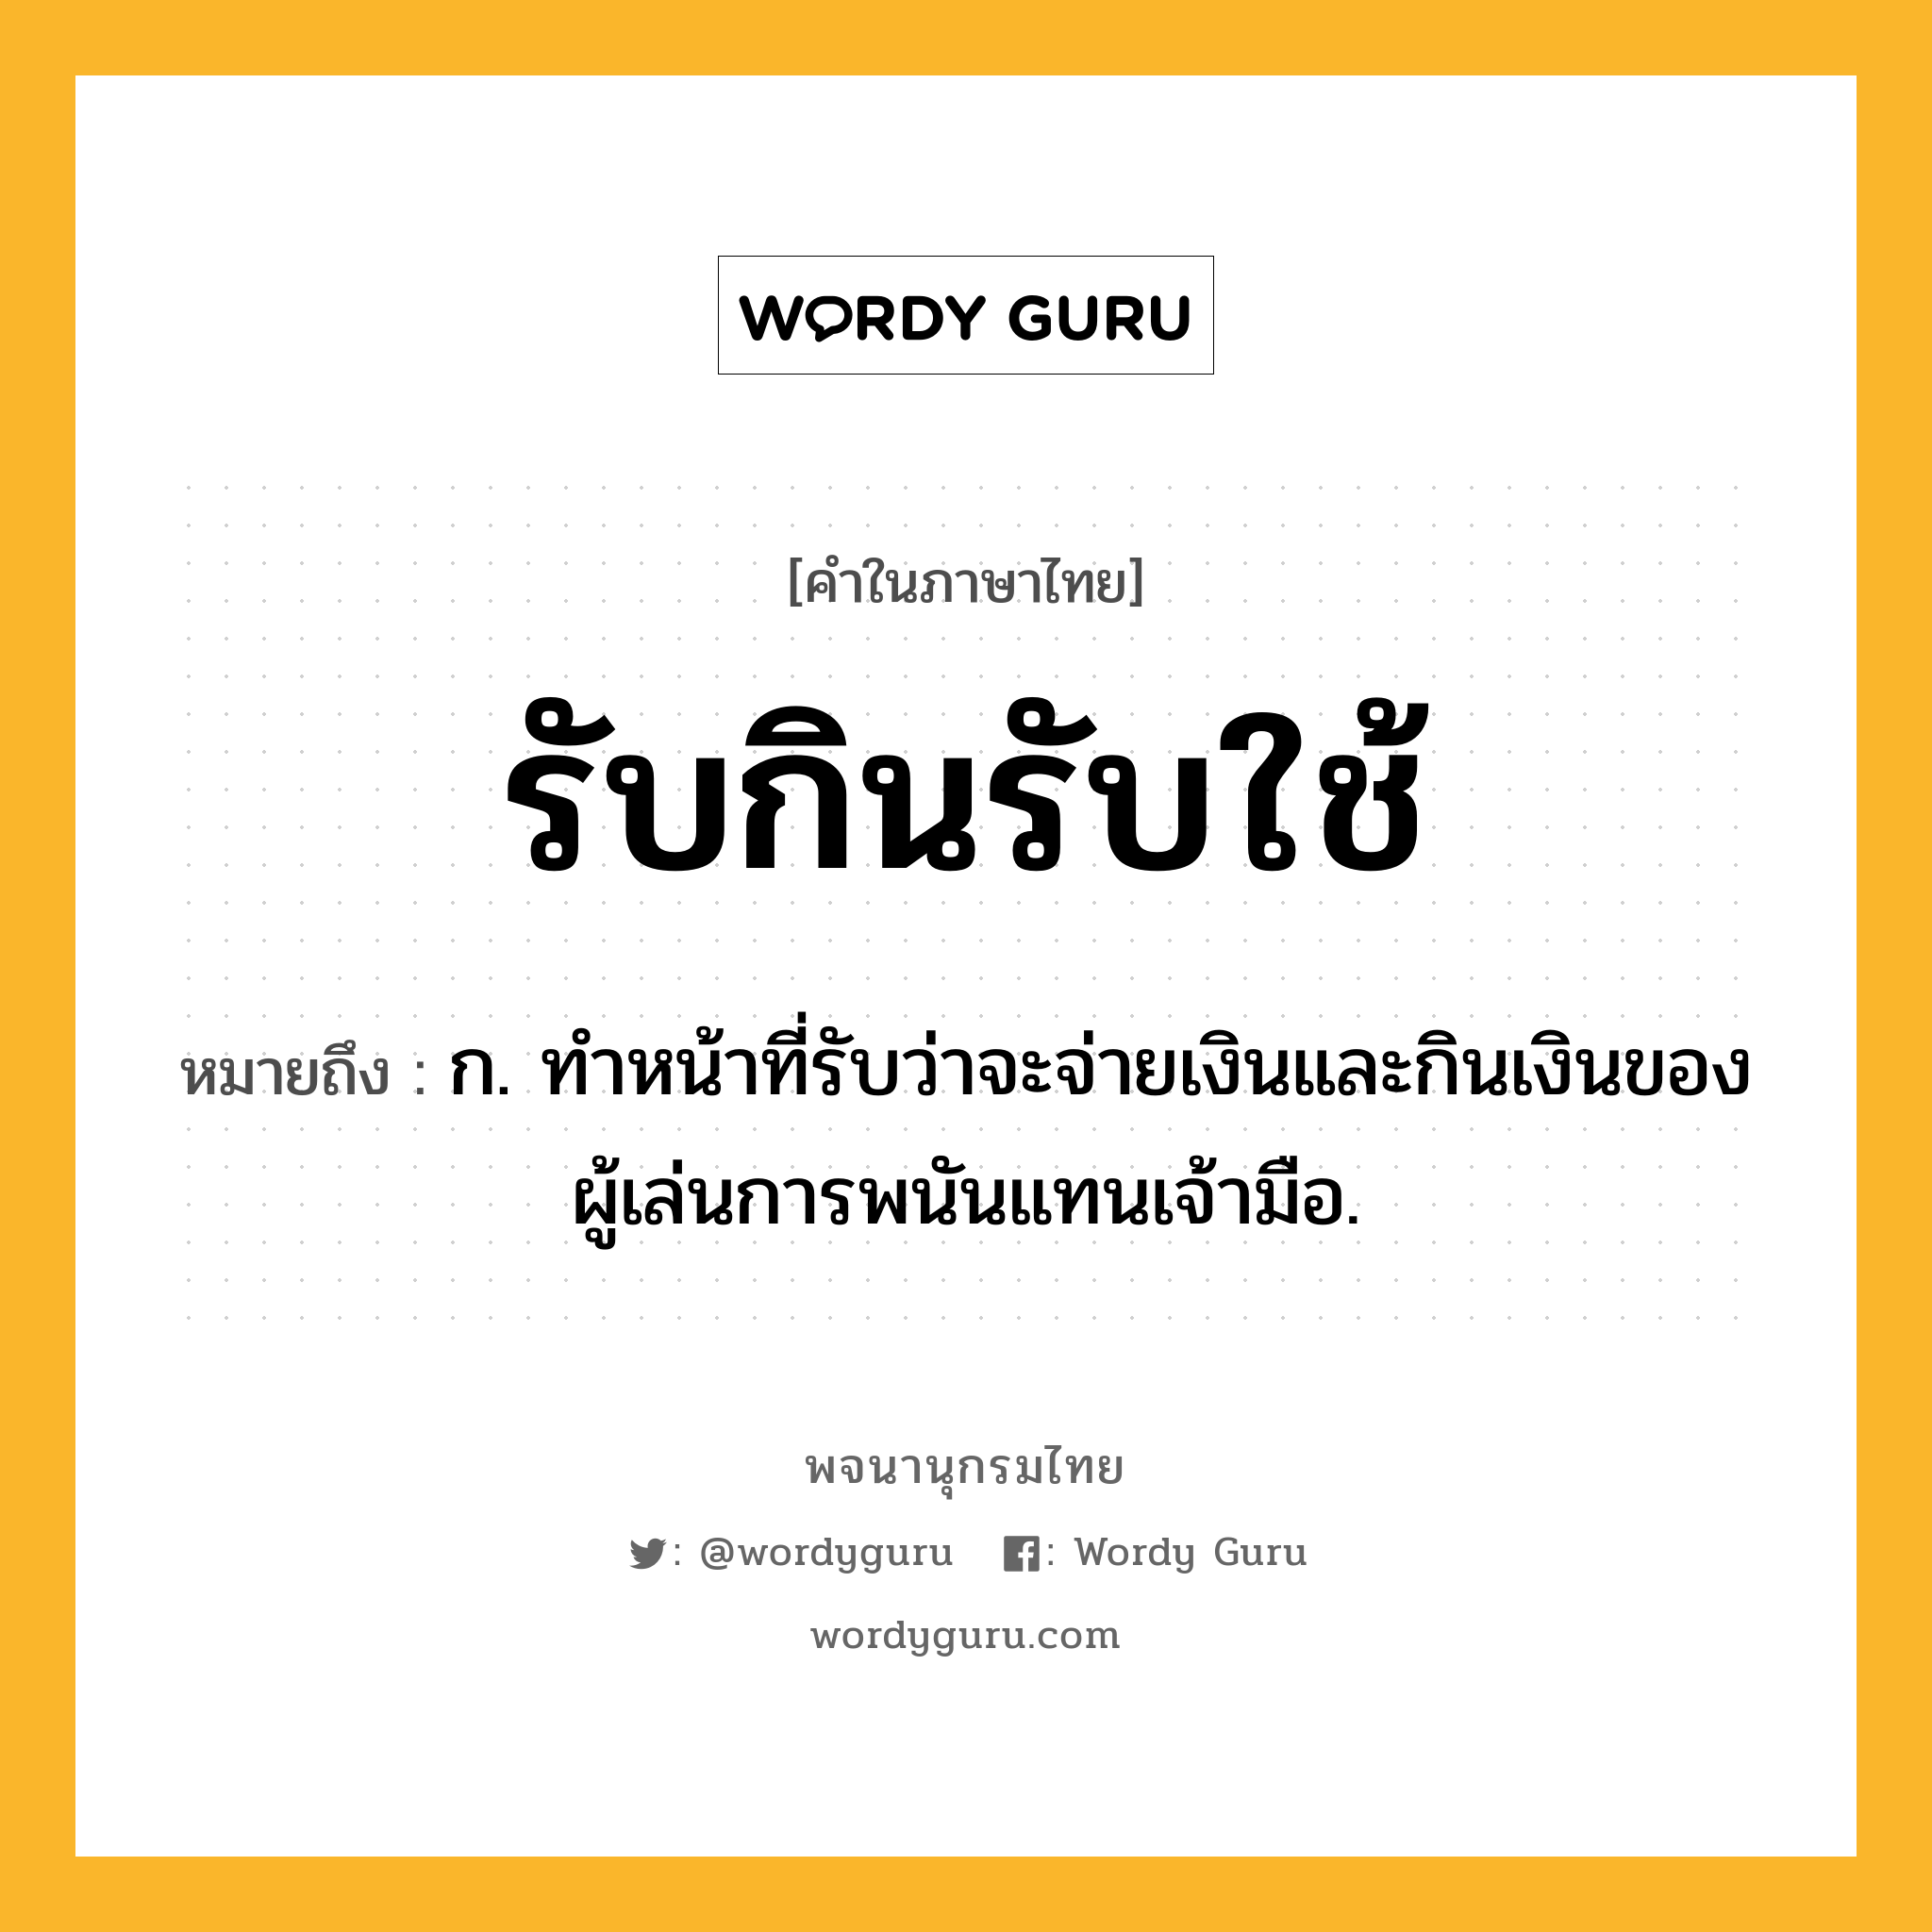 รับกินรับใช้ ความหมาย หมายถึงอะไร?, คำในภาษาไทย รับกินรับใช้ หมายถึง ก. ทำหน้าที่รับว่าจะจ่ายเงินและกินเงินของผู้เล่นการพนันแทนเจ้ามือ.